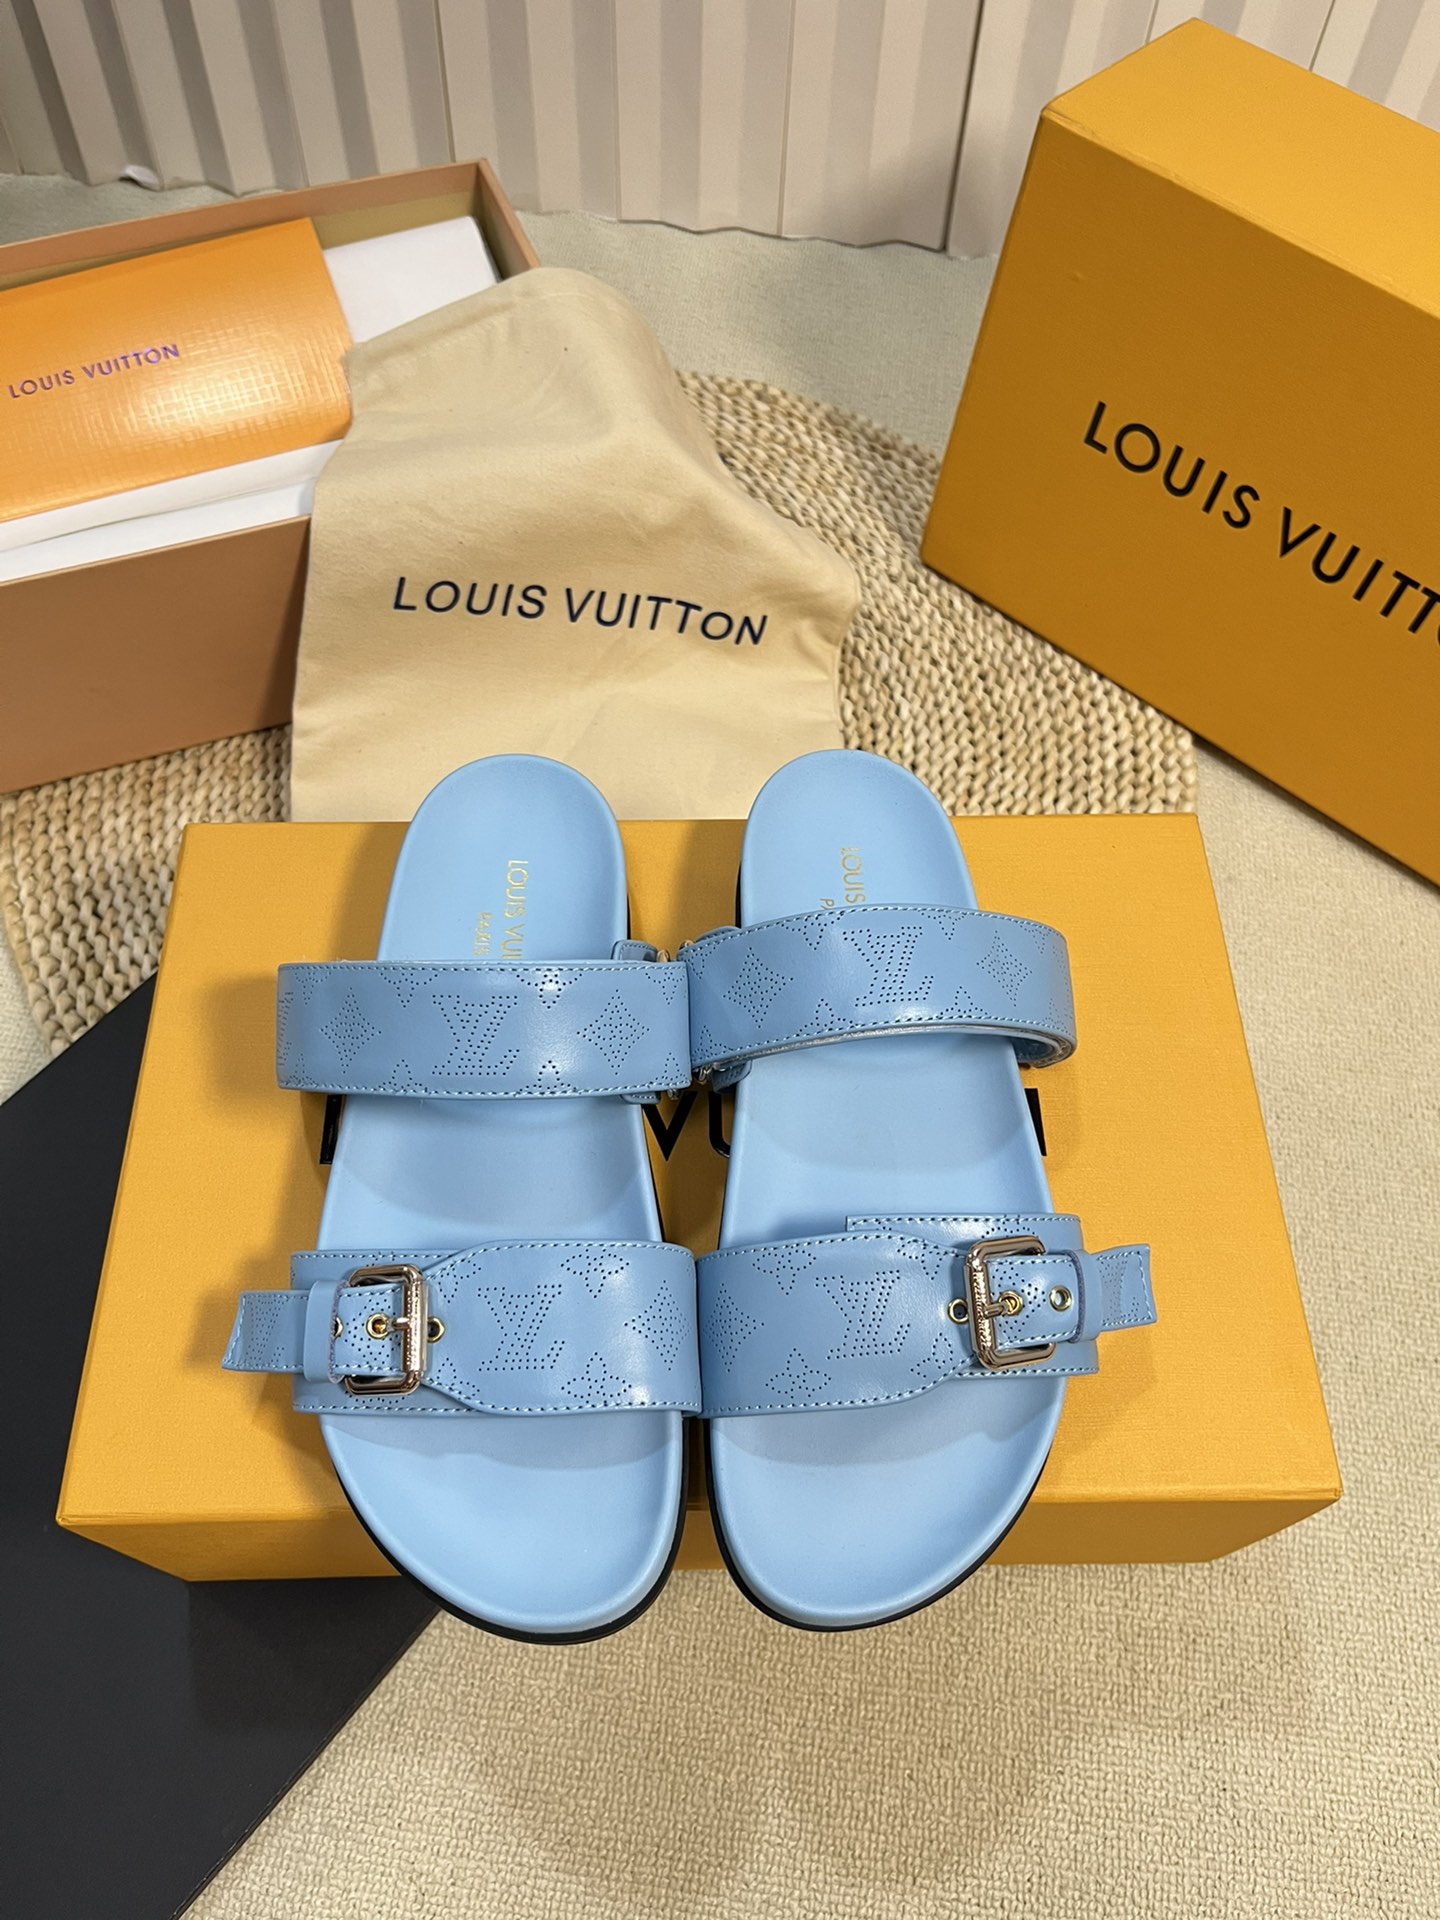 Più desiderato
 Louis Vuitton Scarpe Pantofole Incisione Pelle bovina Gomma di pecora Collezione Primavera/Estate